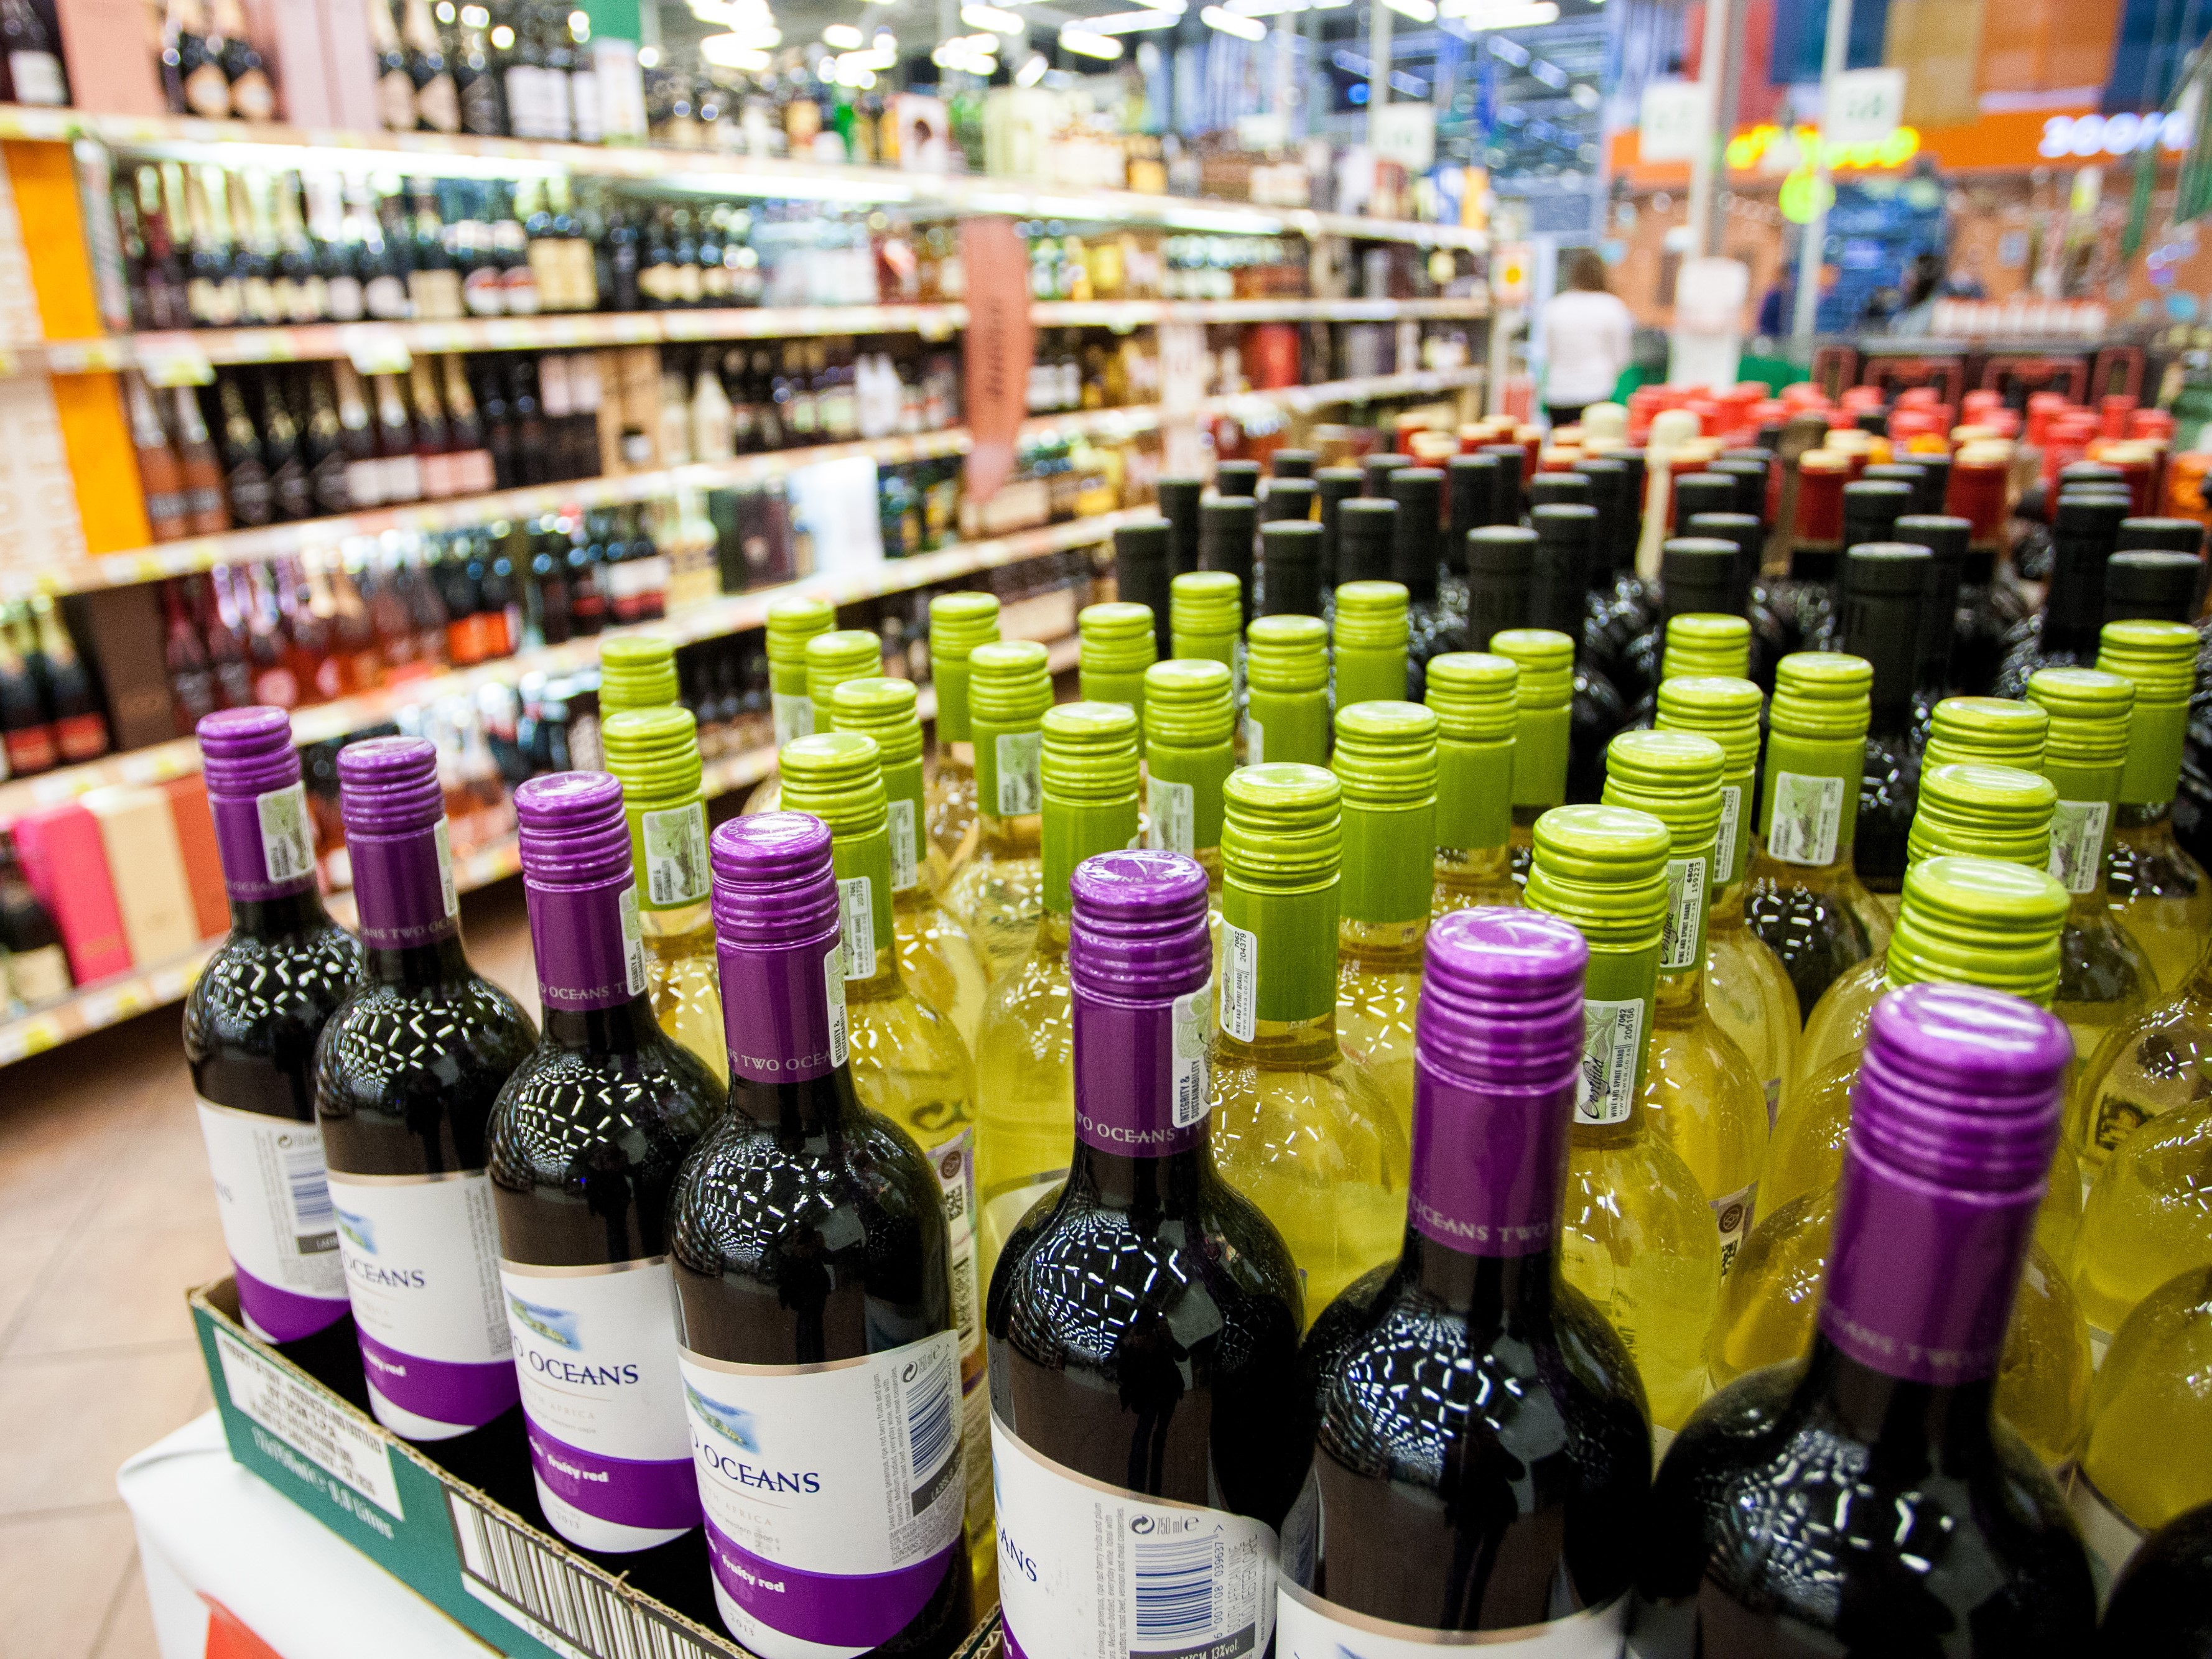 Минпромторг поддерживает повышение пошлины на вино из стран НАТО до 200%